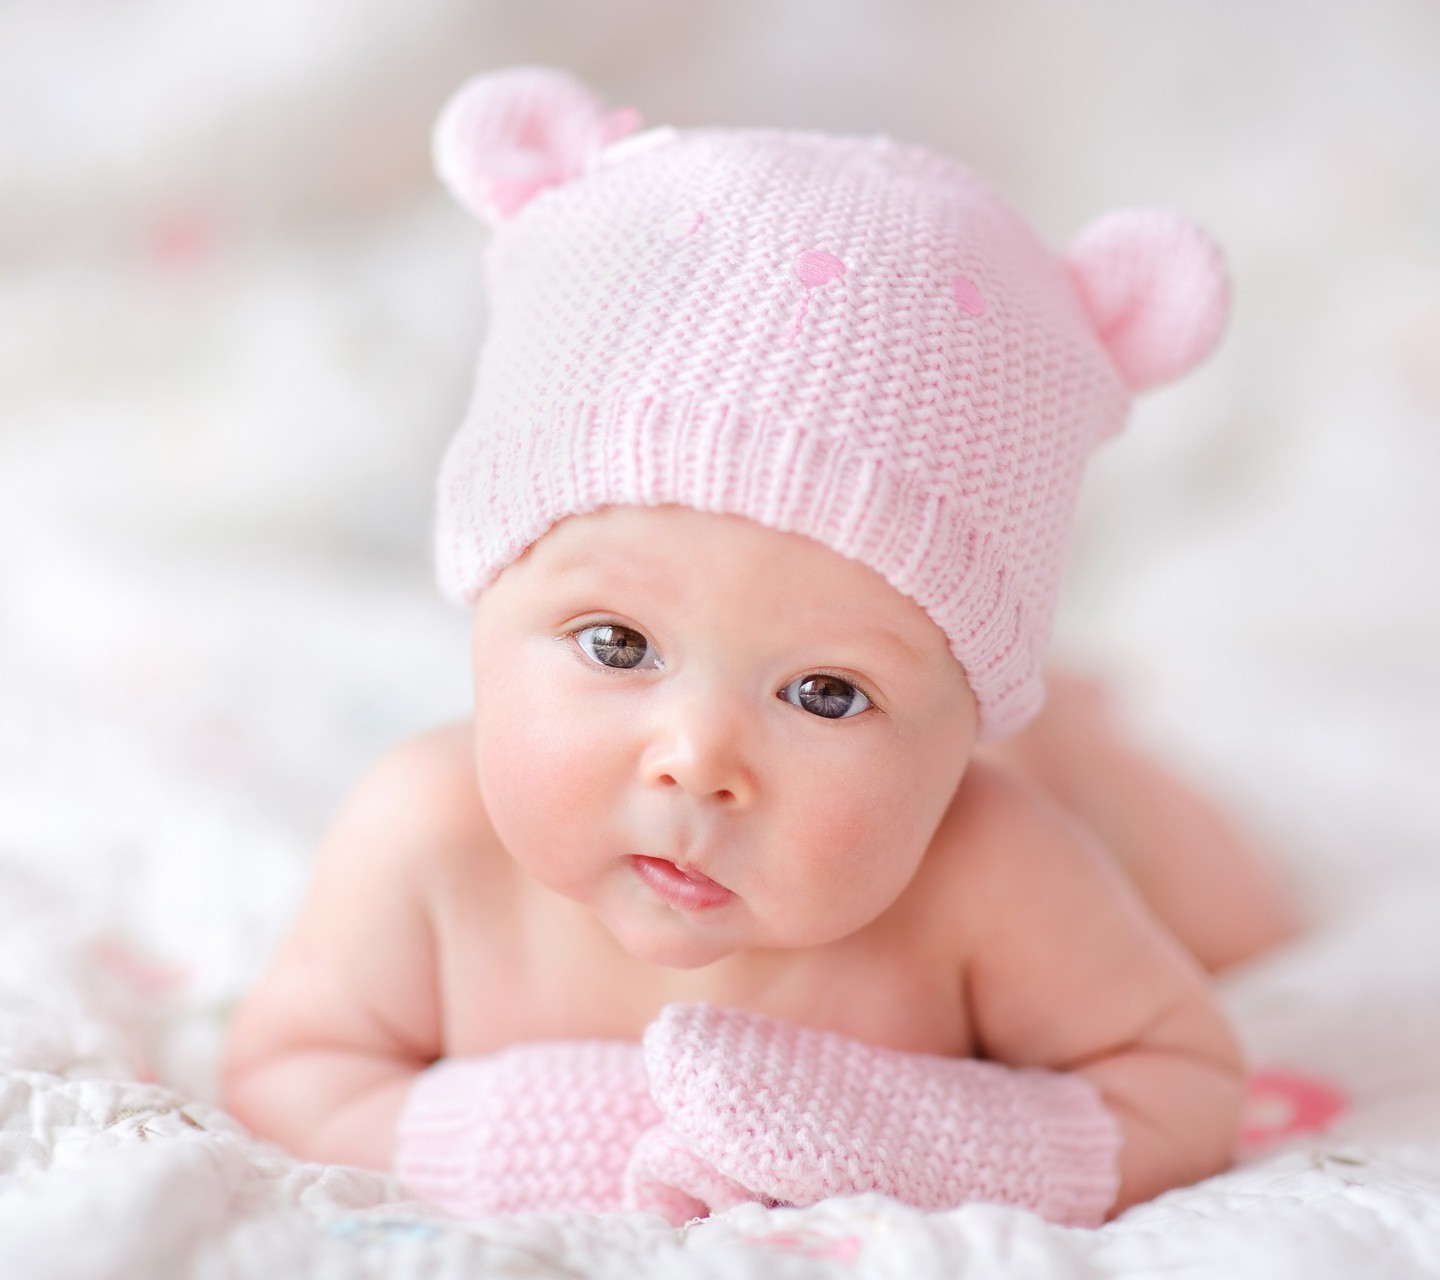 photos de bébé pour fonds d'écran,enfant,bébé,photographier,rose,bonnet